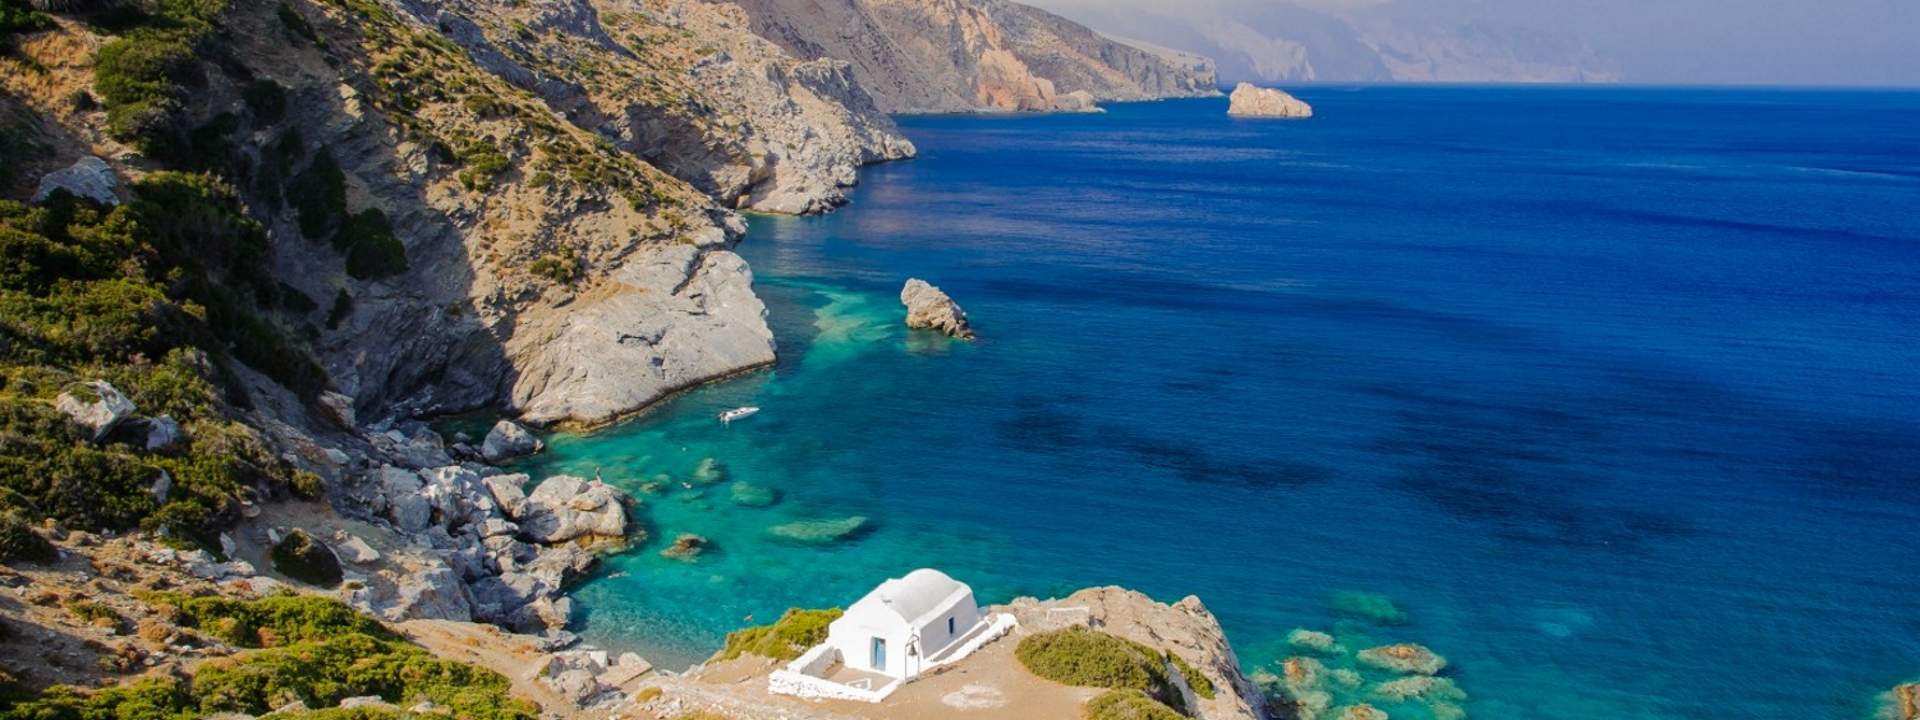 En croisière à la cabine ou privatisée, explorez les îles grecques en voilier